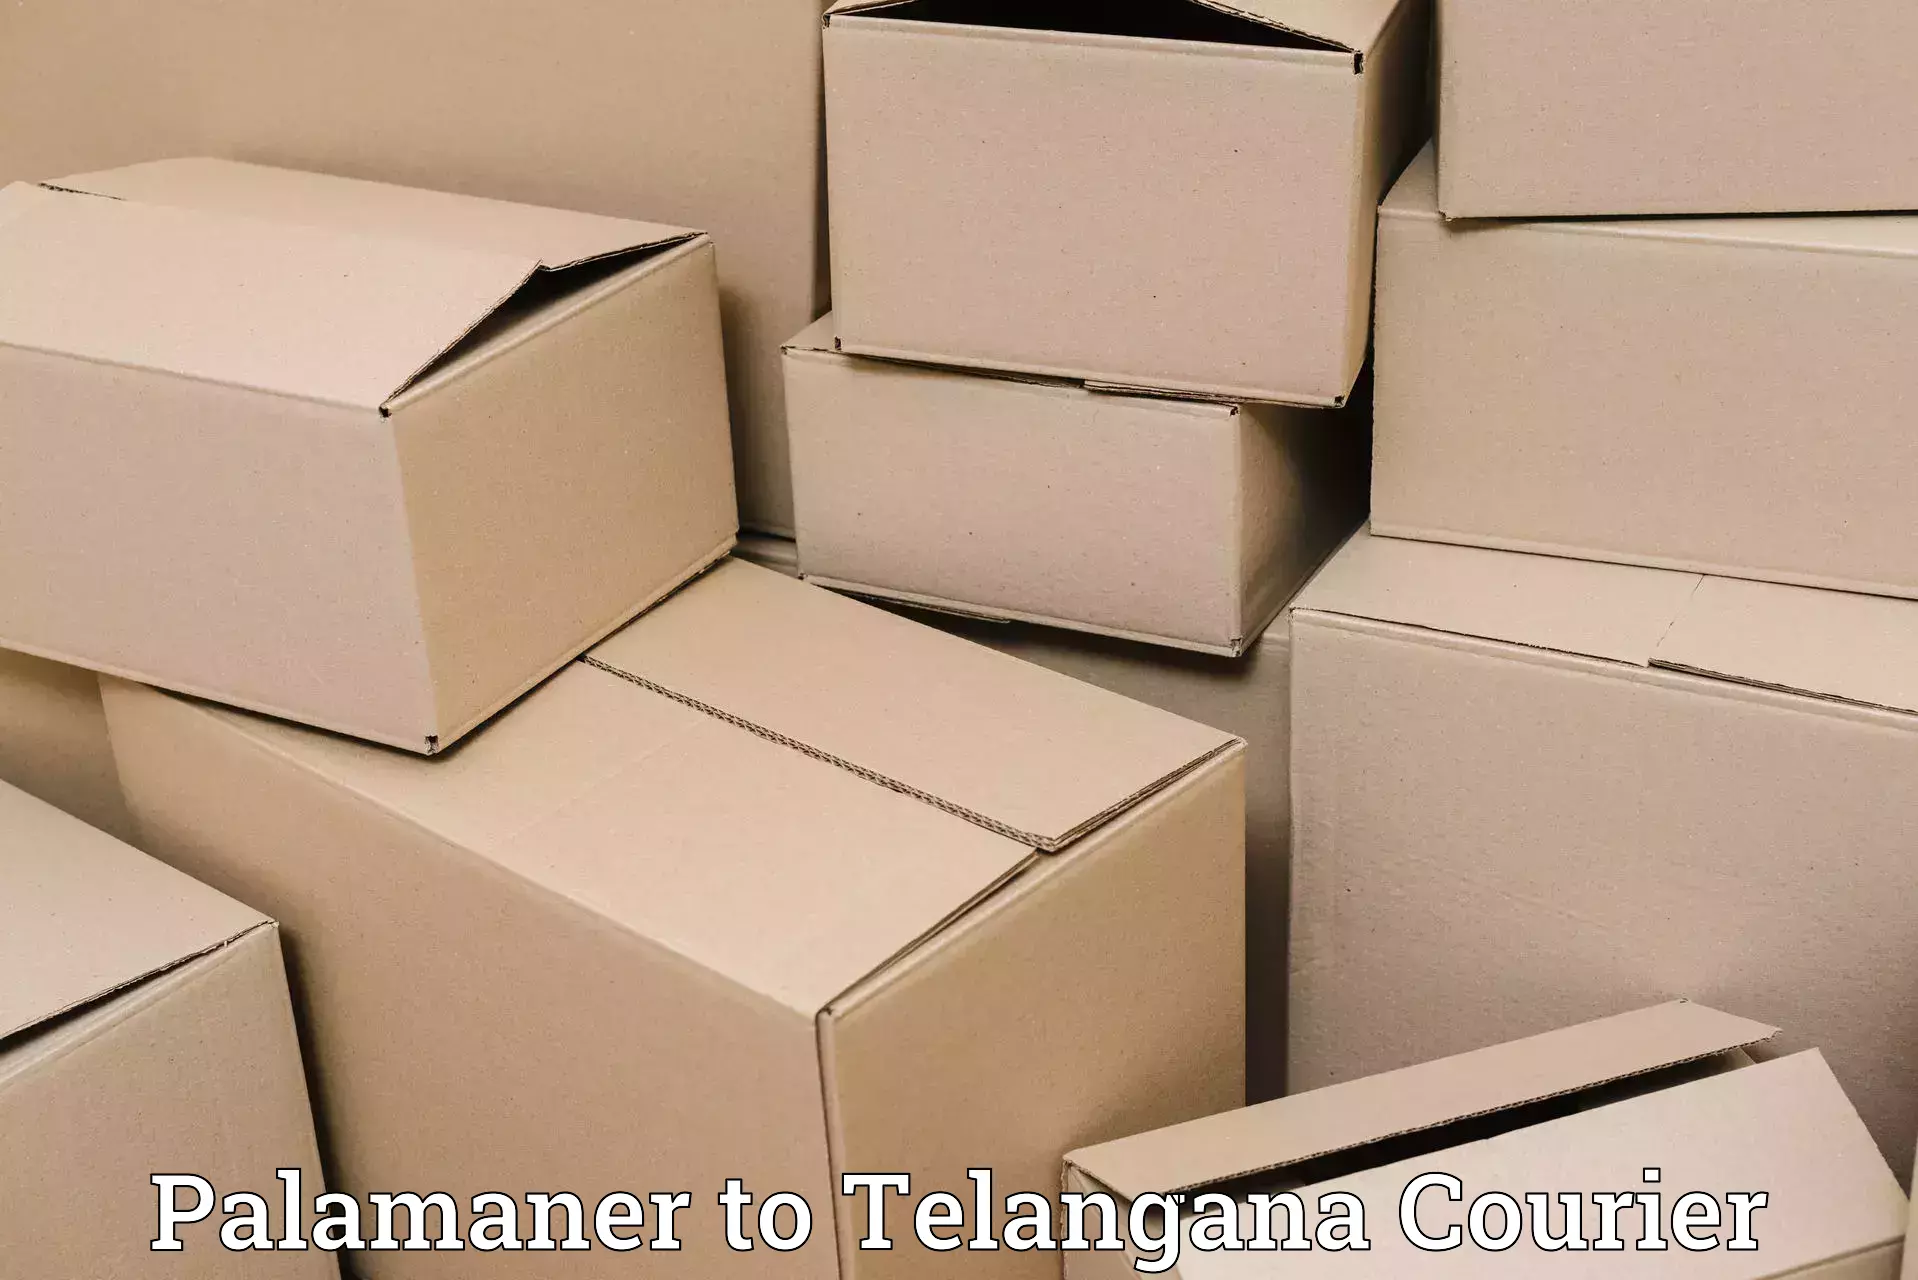 Affordable parcel service Palamaner to Medak